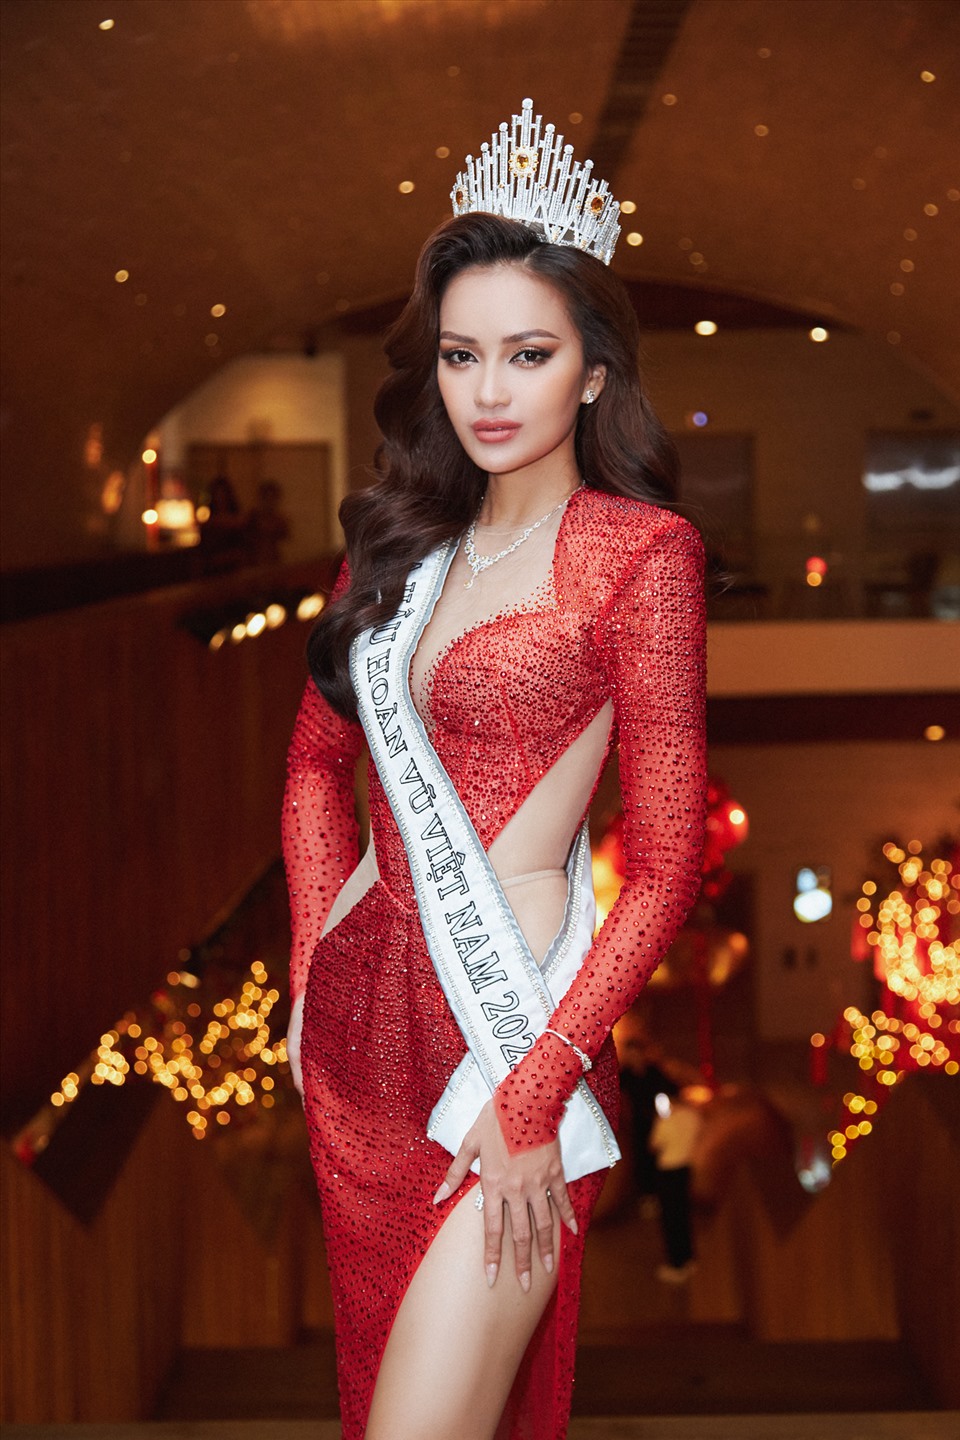 Với kinh nghiệm chinh chiến các cuộc thi nhan sắc trước đó, Ngọc Châu đã sẵn sàng lên đường tham dự Miss Universe - Hoa hậu Hoàn vũ Thế giới 2022. Ảnh: MUV